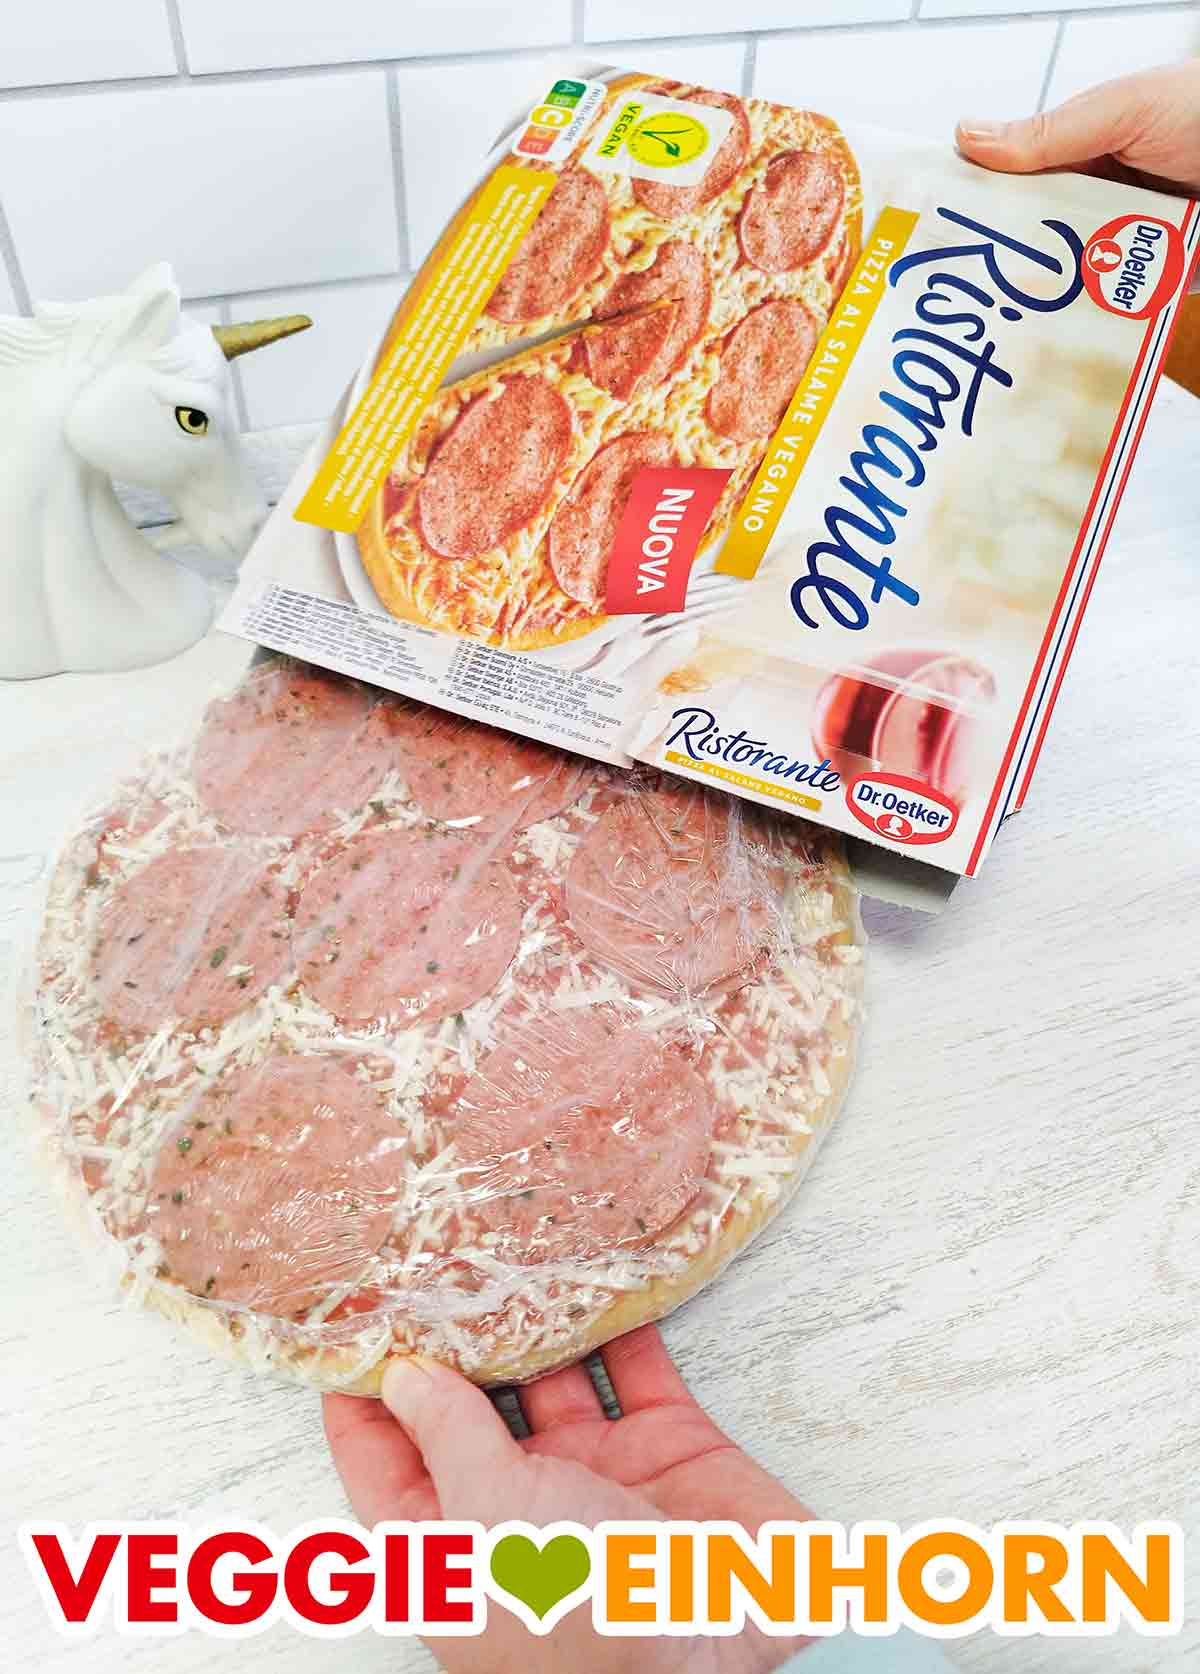 Auspacken der veganen Pizza Ristorante Salami von Dr. Oetker